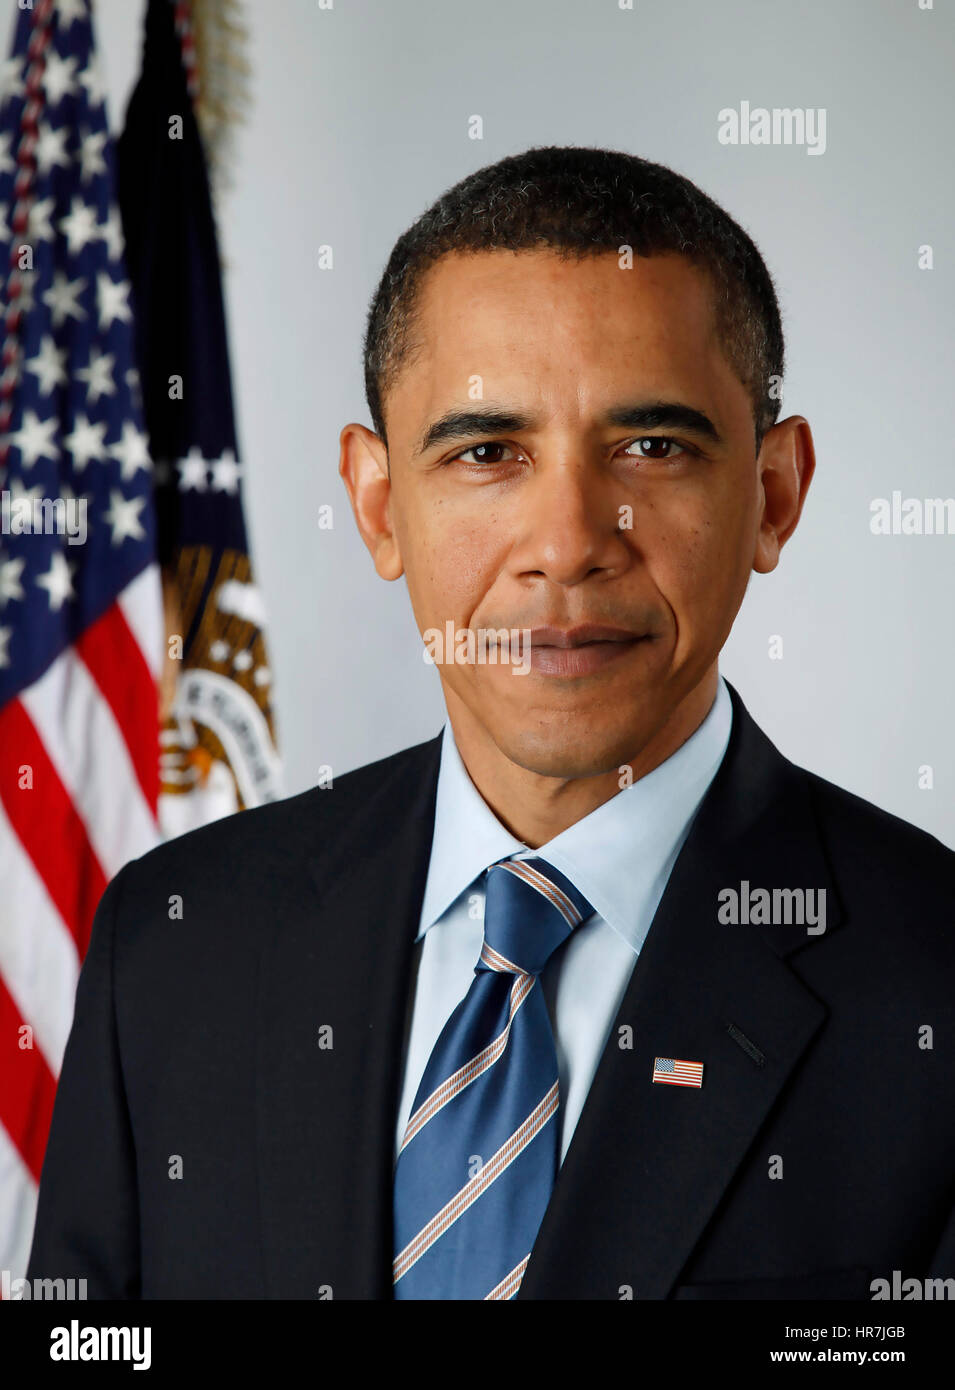 -WÄHLT Präsident BARACK OBAMA offizielle Porträt am 13. Januar 2009. Foto: Pete Souza/White House Beamter (Photo by Pete Souza) Stockfoto